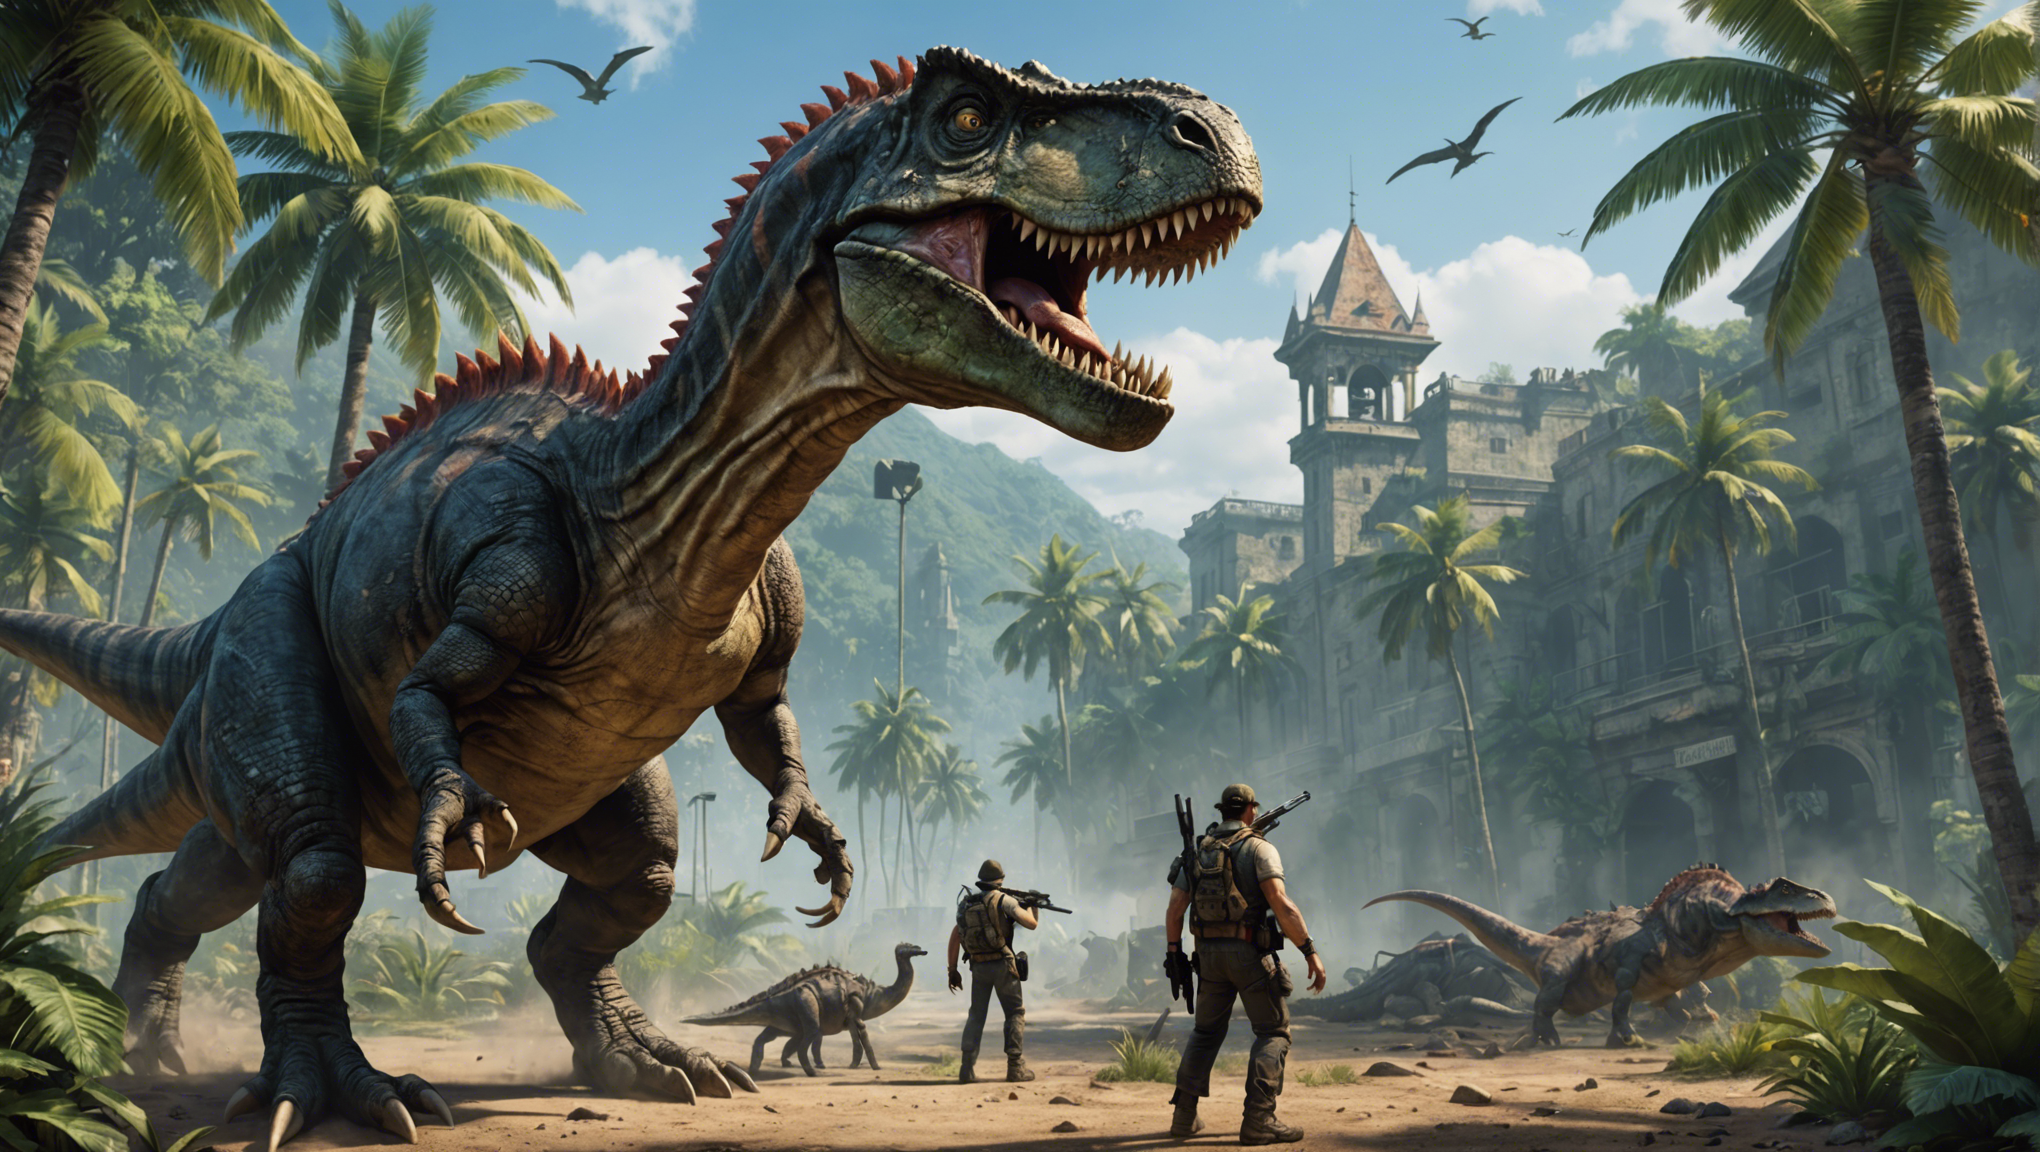 découvrez l'émergence d'une nouvelle tendance avec les jeux vidéo de dinosaures. plongez au cœur de l'ère préhistorique et affrontez des créatures mythiques dans ce nouveau genre de jeu vidéo.